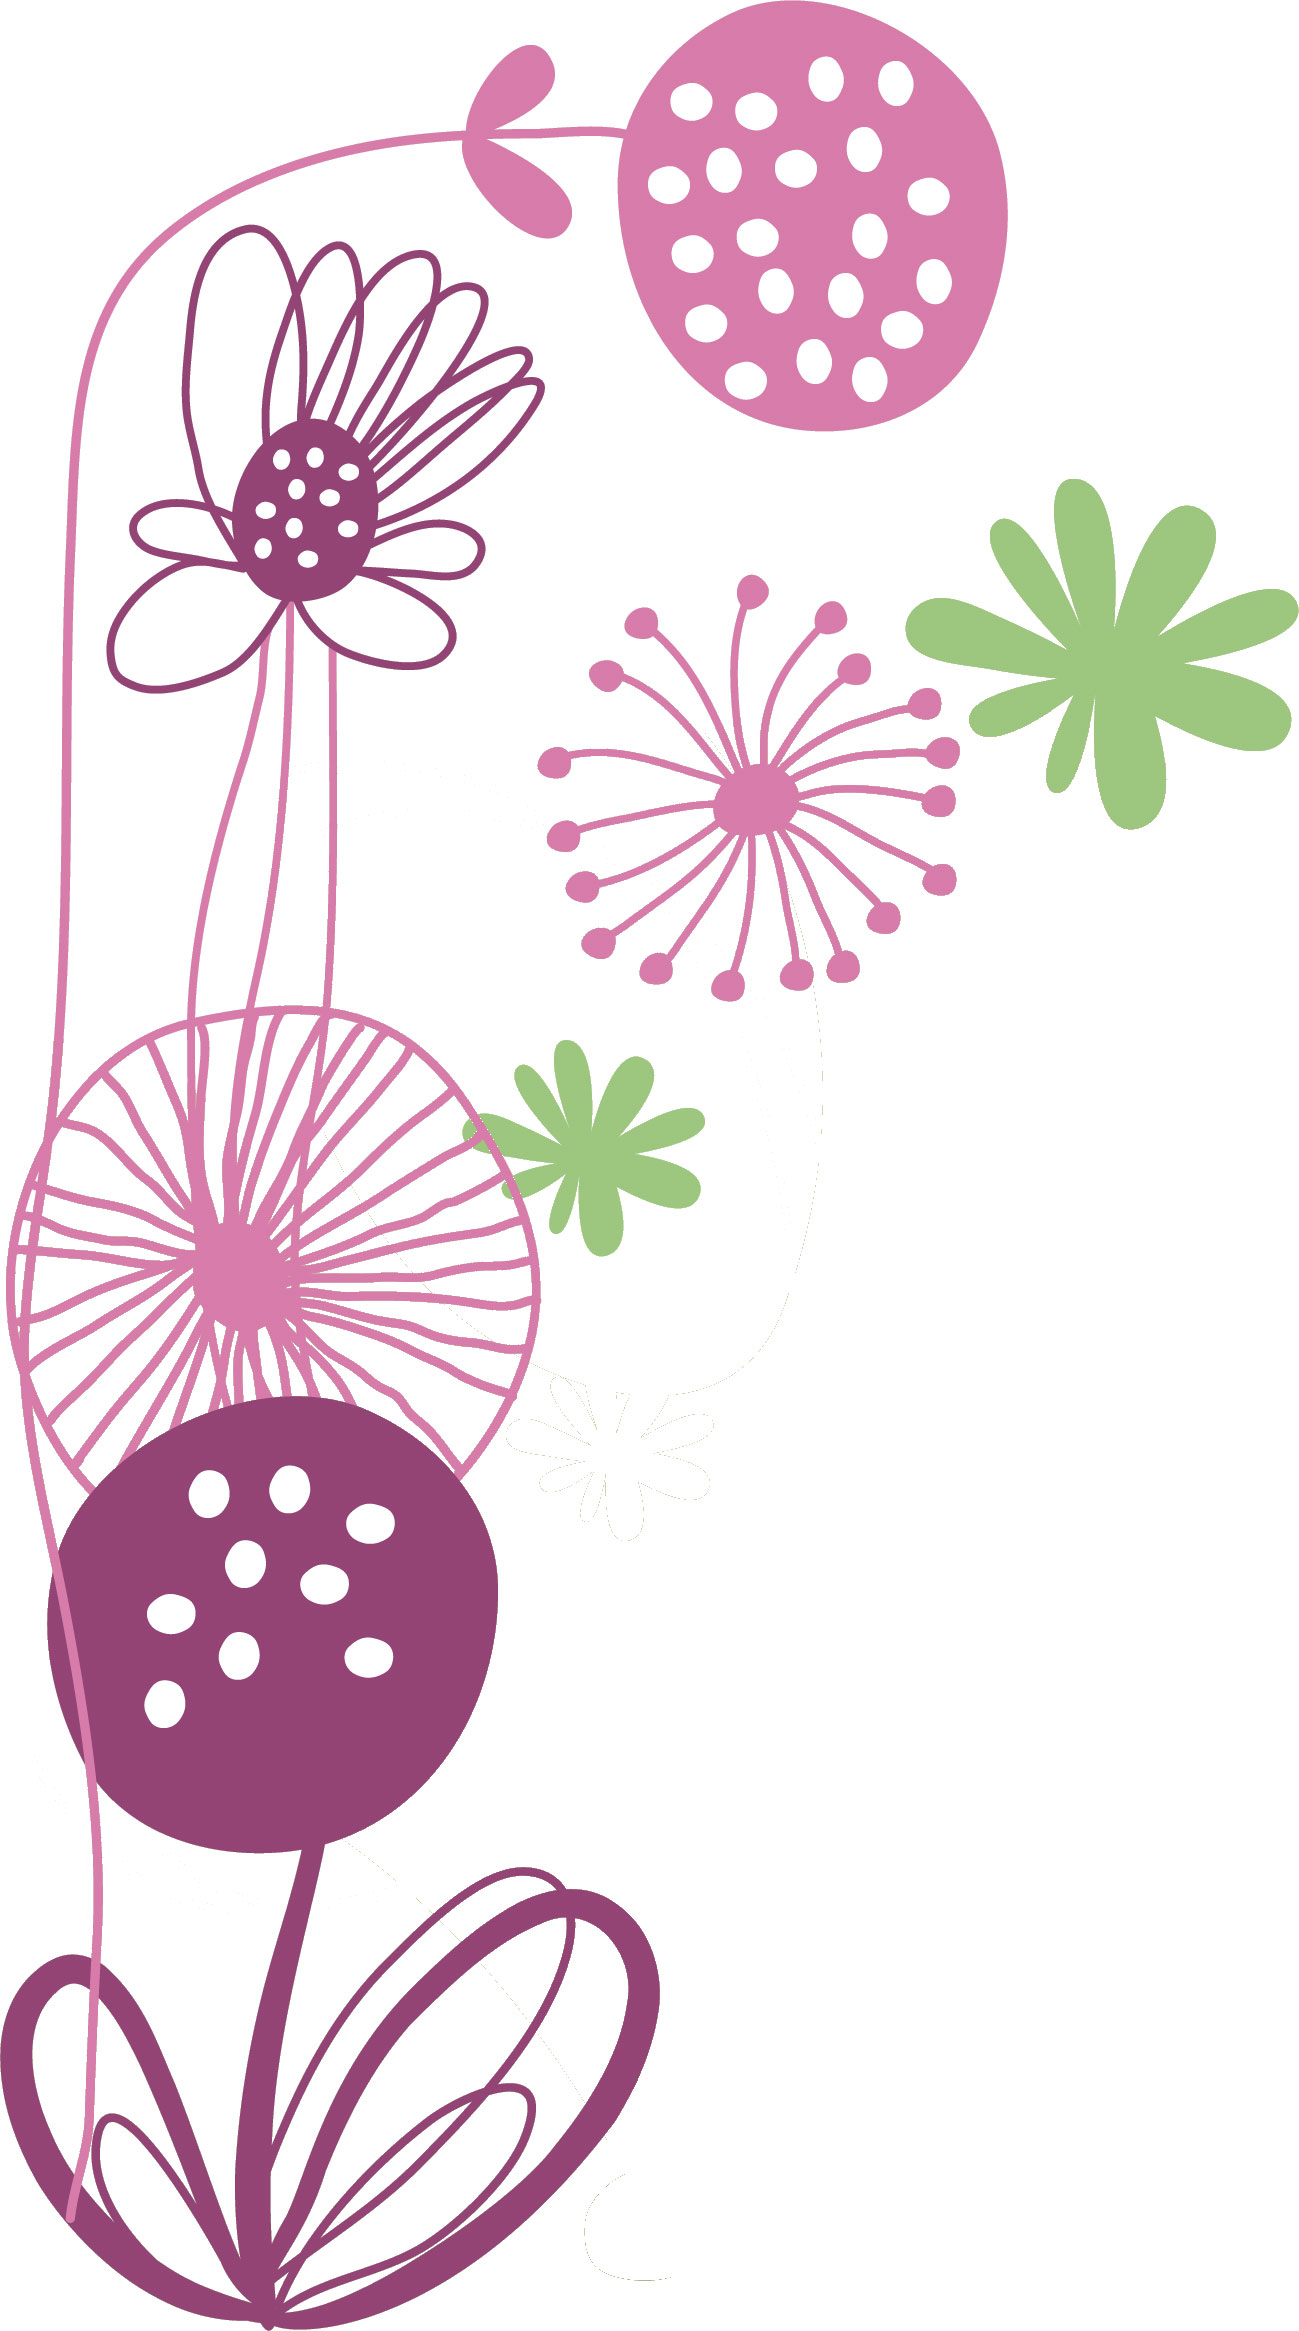 紫色の花のイラスト フリー素材 No 377 手書き風 線画